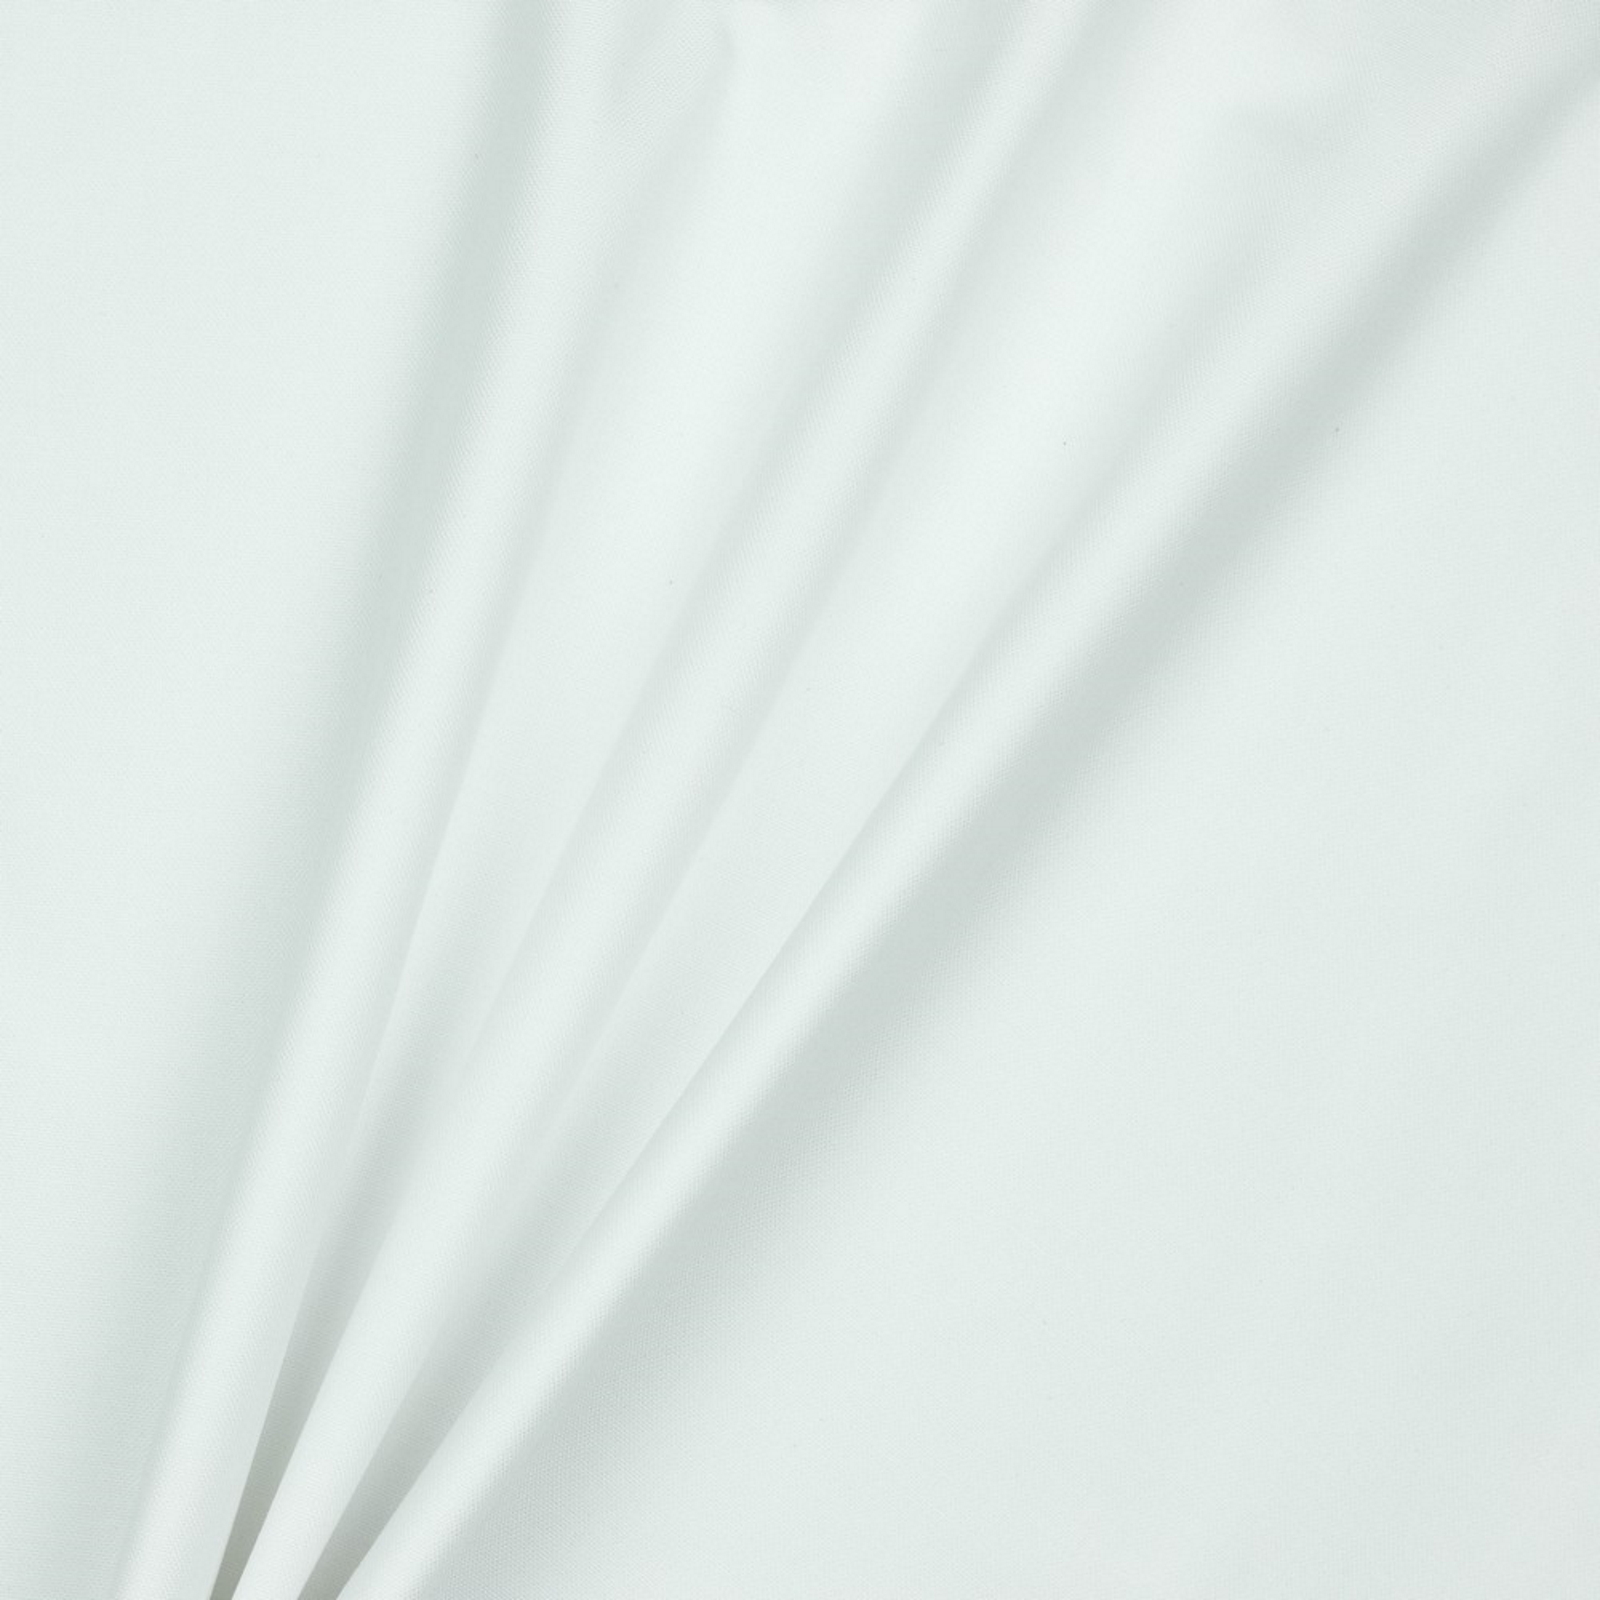 Stoff Meterware Teflon Beschichtet Weiß 280 cm